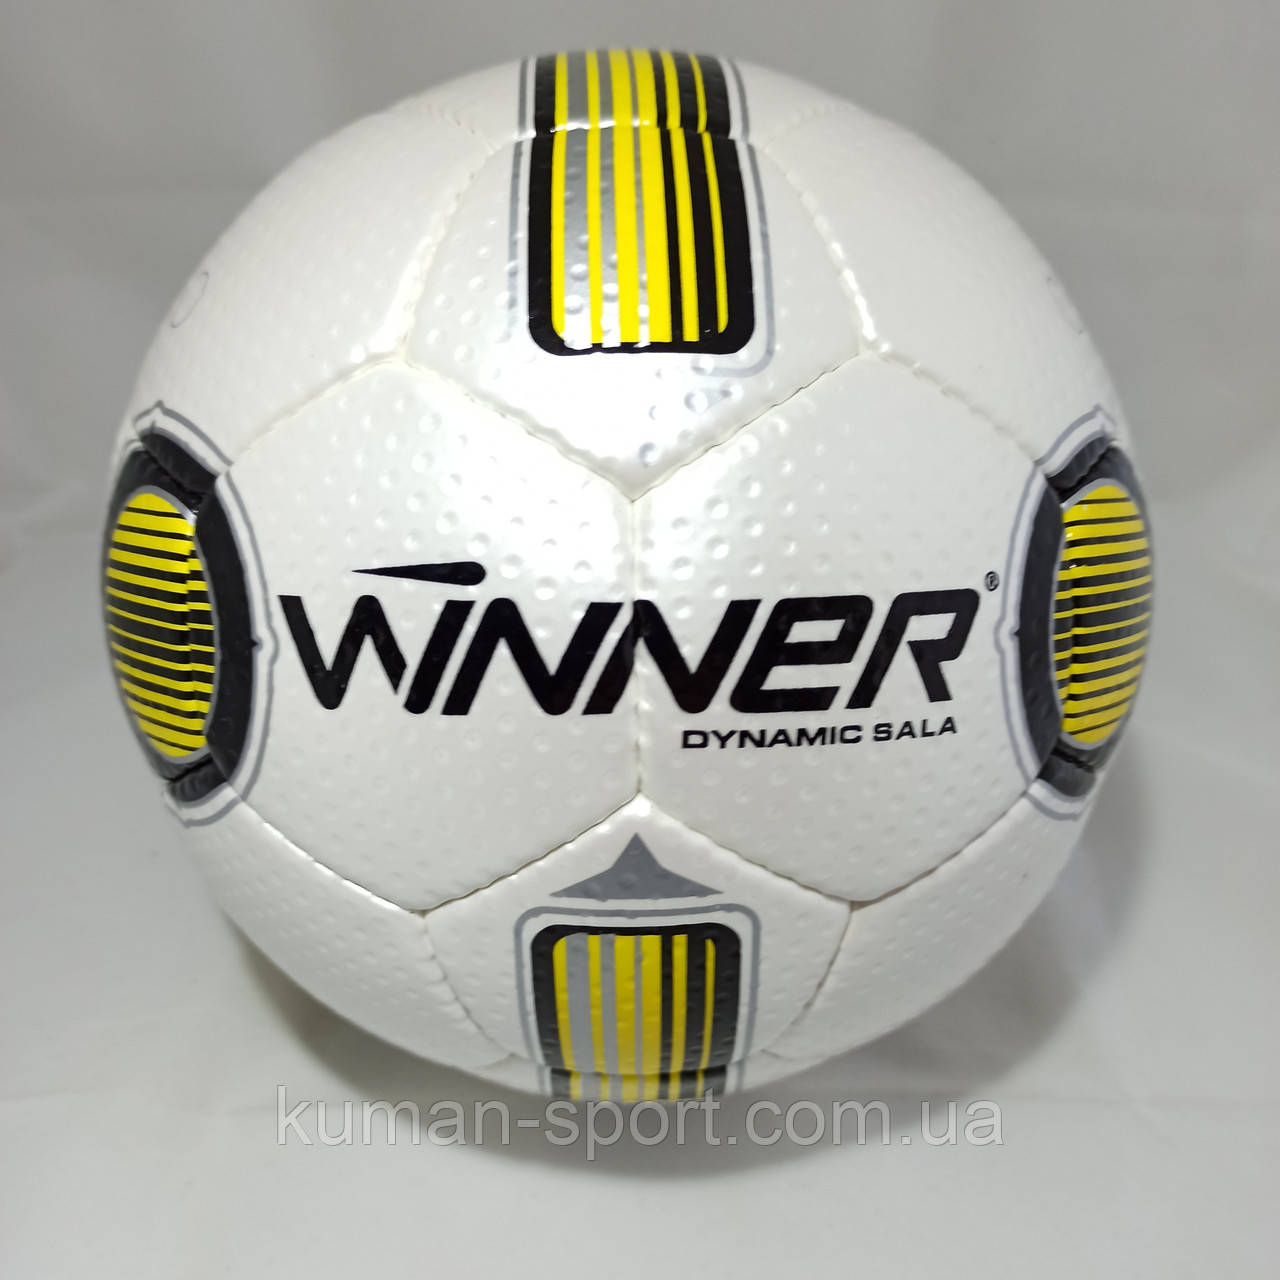 М'яч для футзалу WINNER Dynamic Sala Віннер Динамік Сала ( оригінал)